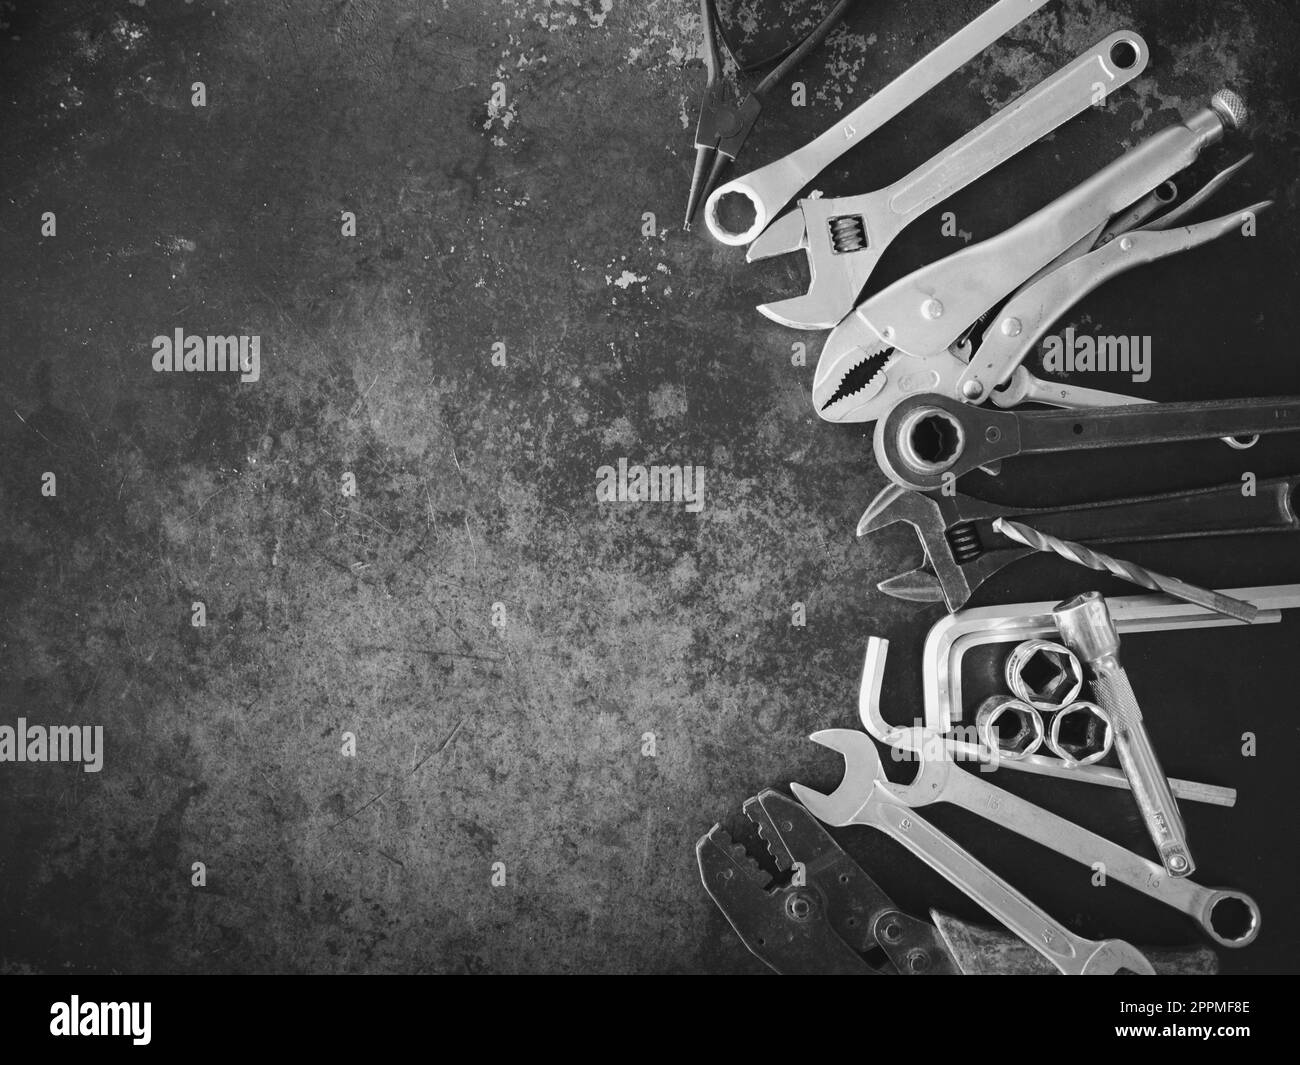 Handwerkzeuge bestehend aus Schraubenschlüsseln, Zangen, Steckschlüsseln, auf altem Stahlblechhintergrund angeordnet. Stockfoto